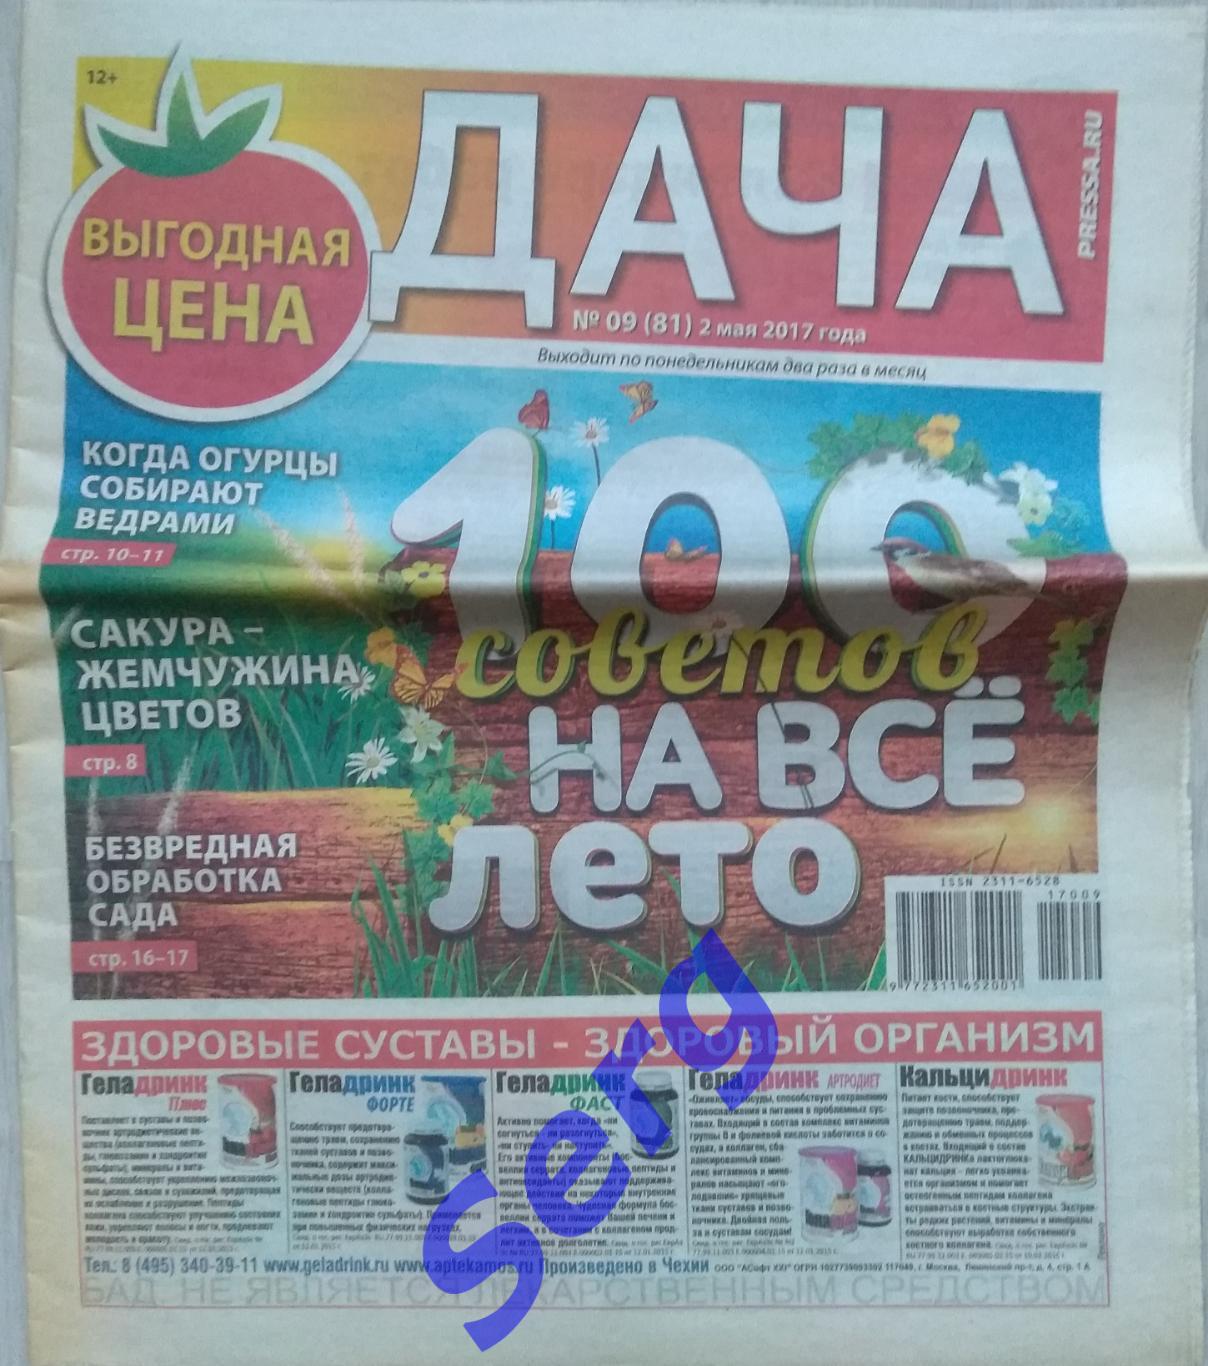 Газета Дача №19 2016 год; №09 за 2017 год